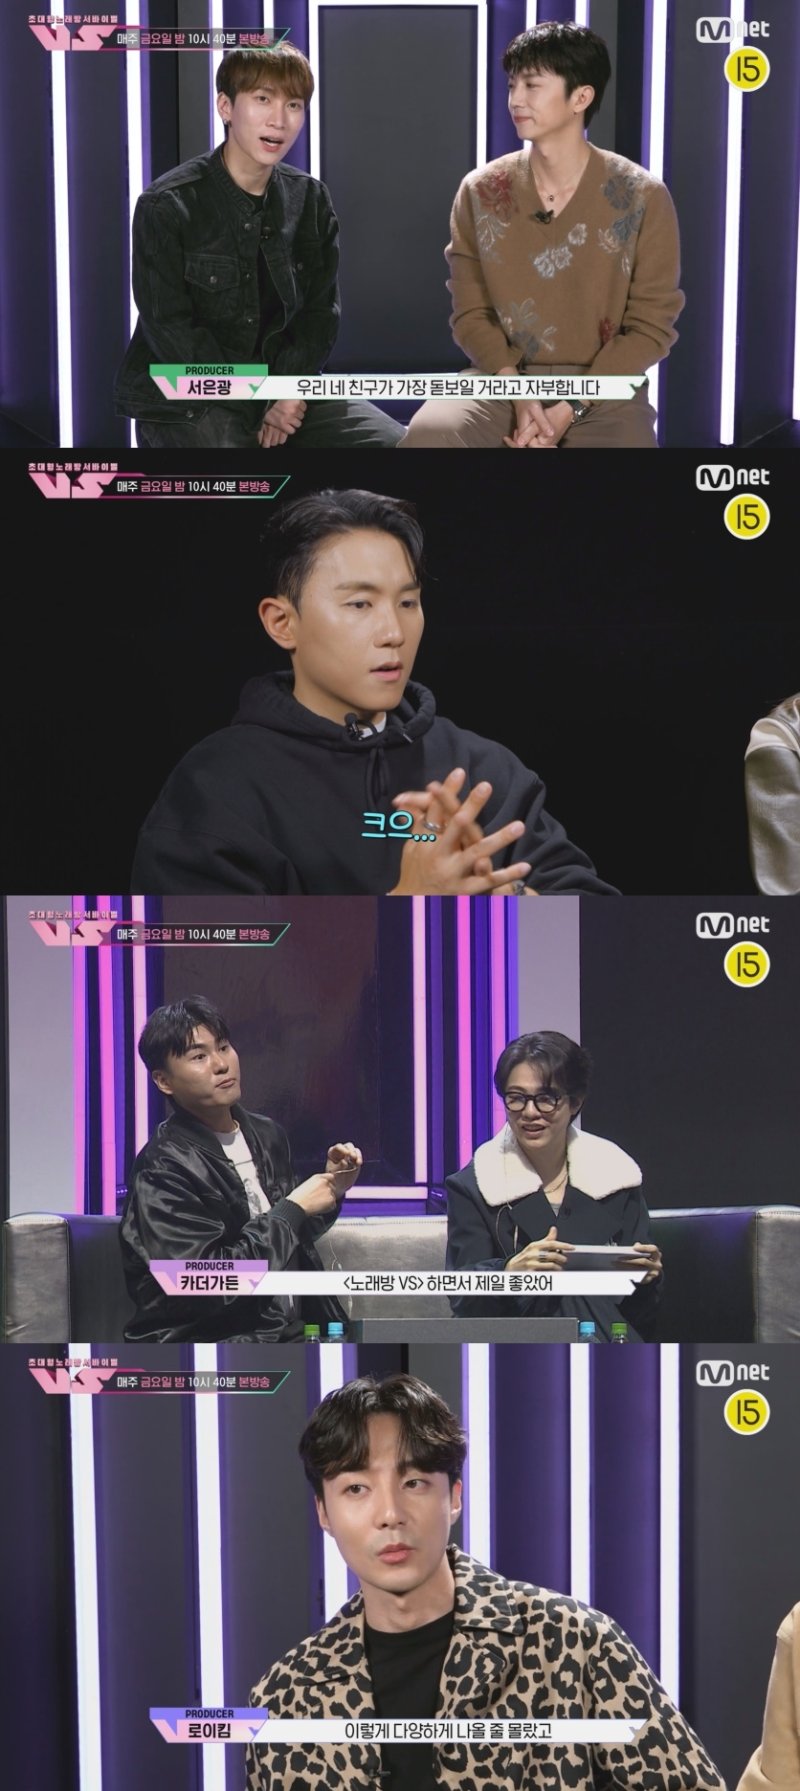 엠넷 '초대형 노래방 서바이벌 VS'